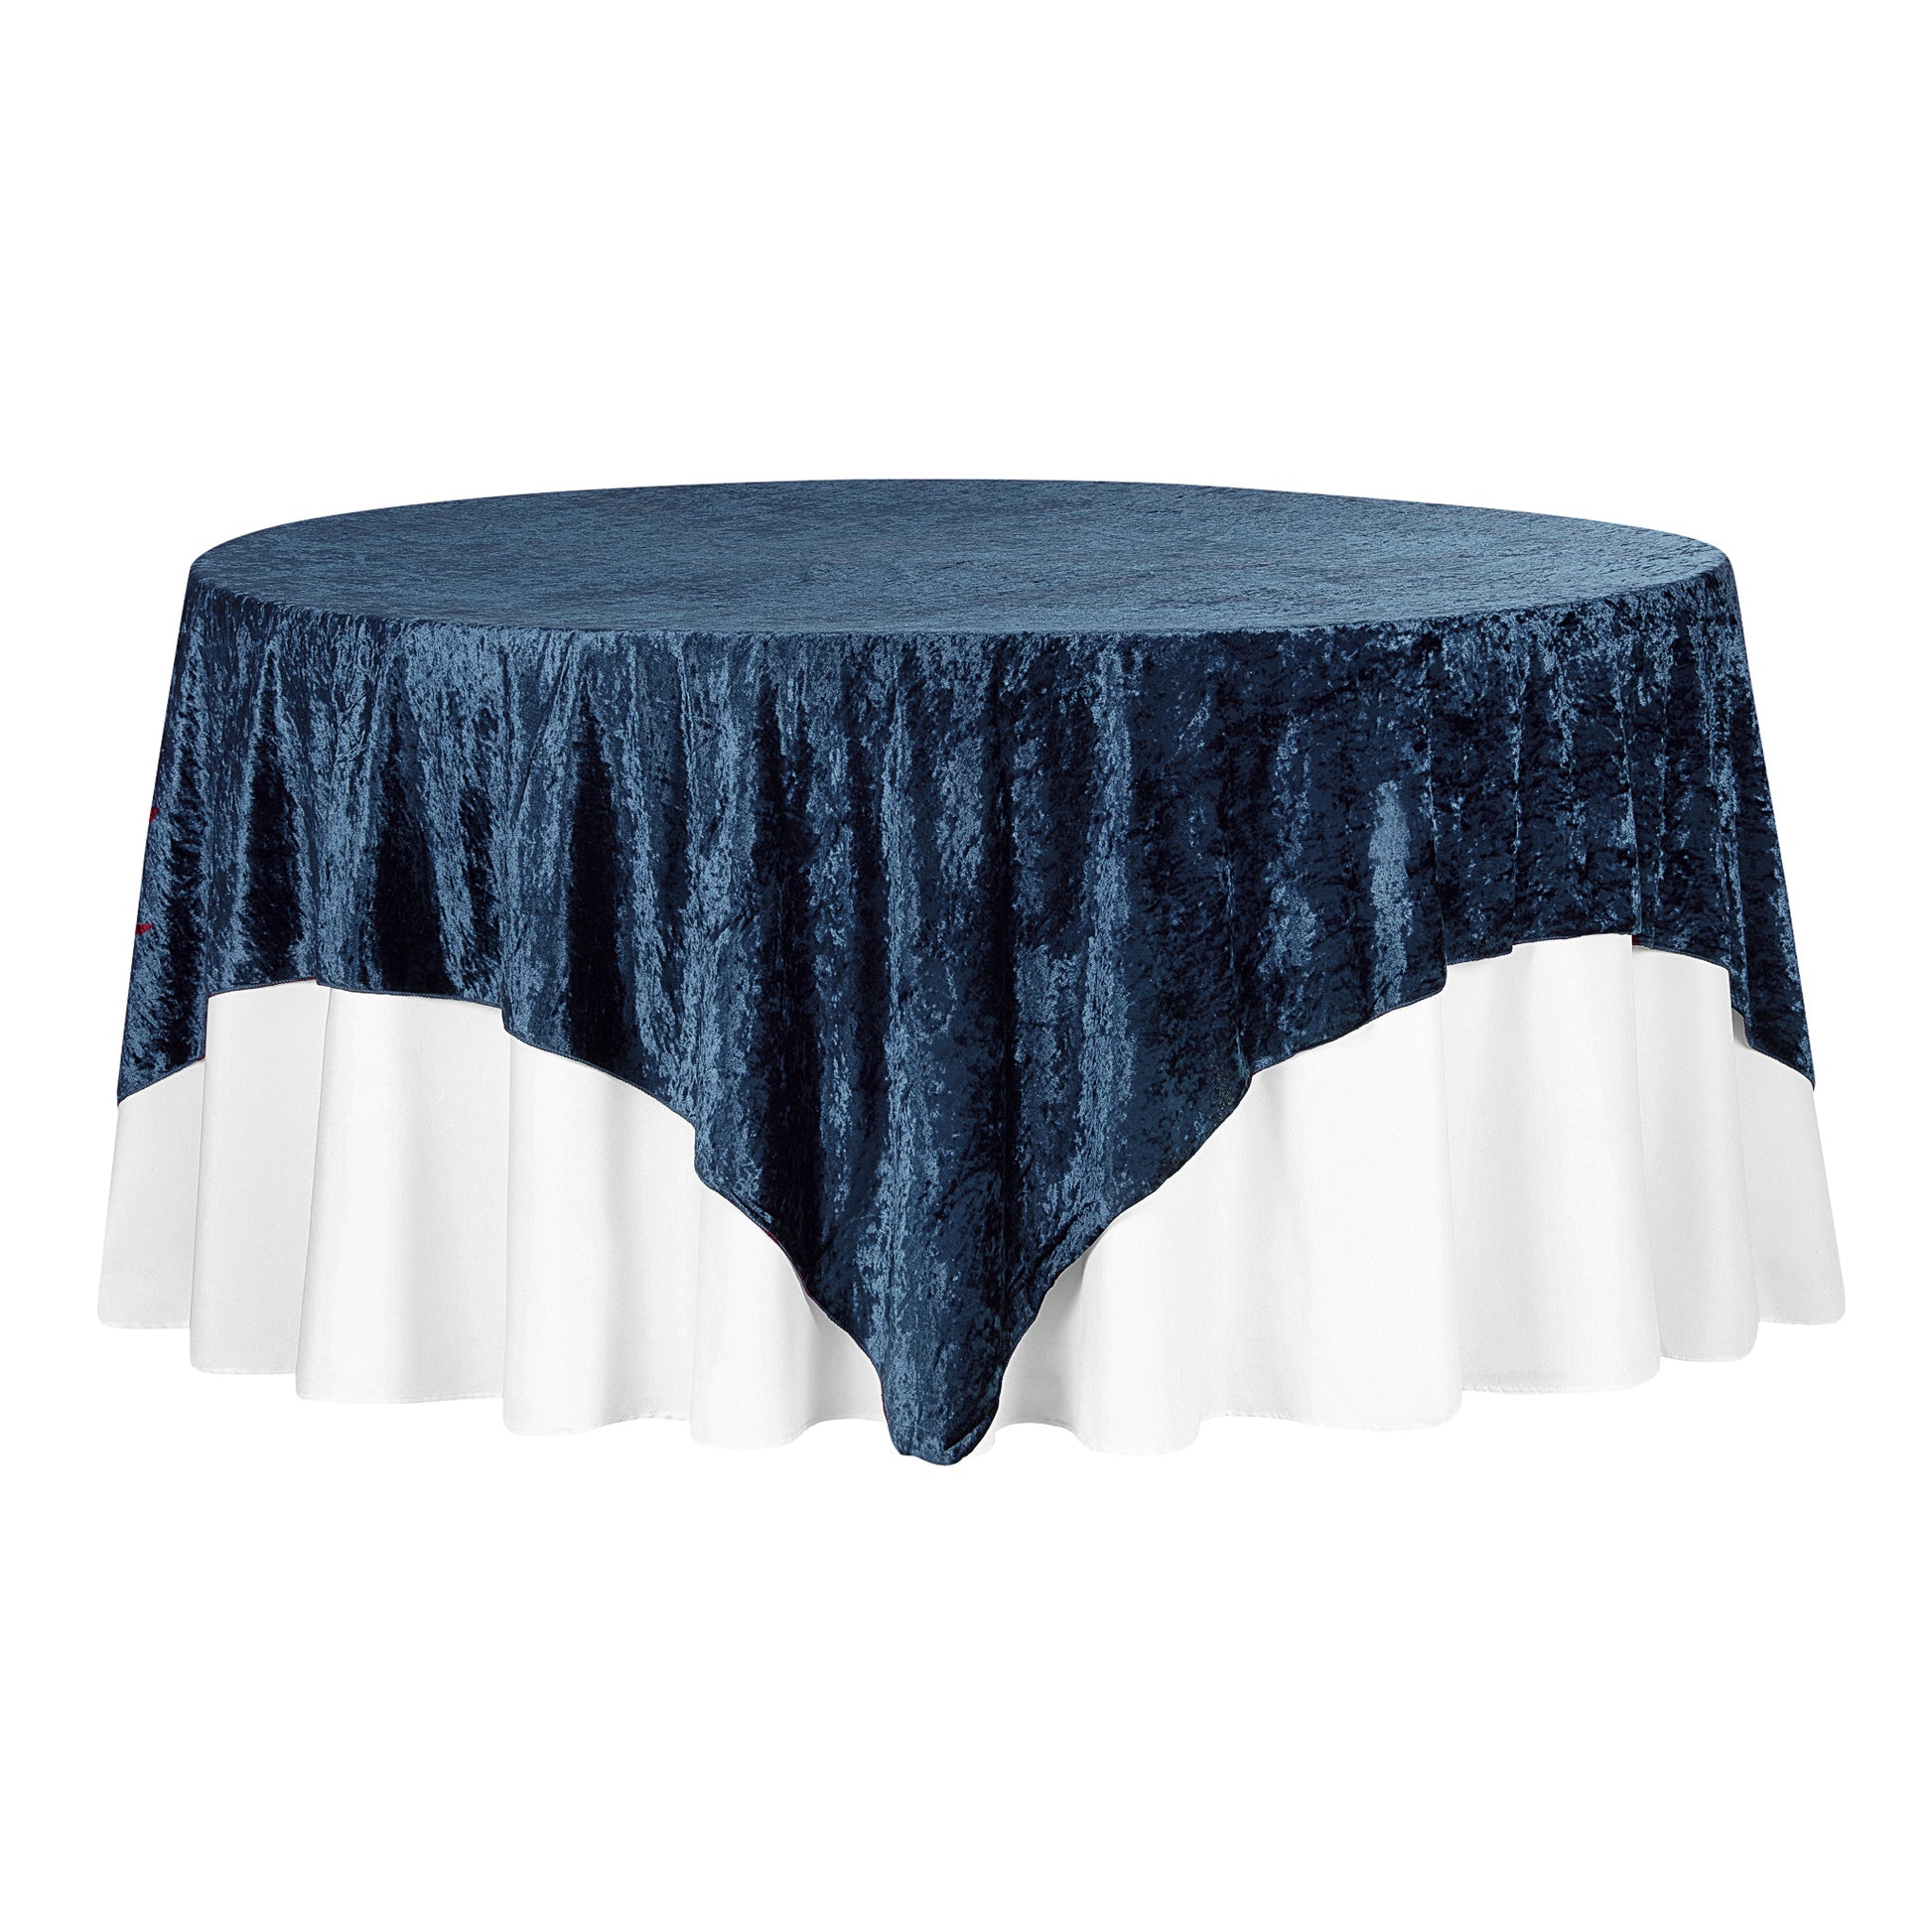 Velvet 85"x85" Square Tablecloth Table Overlay - Navy Blue - CV Linens